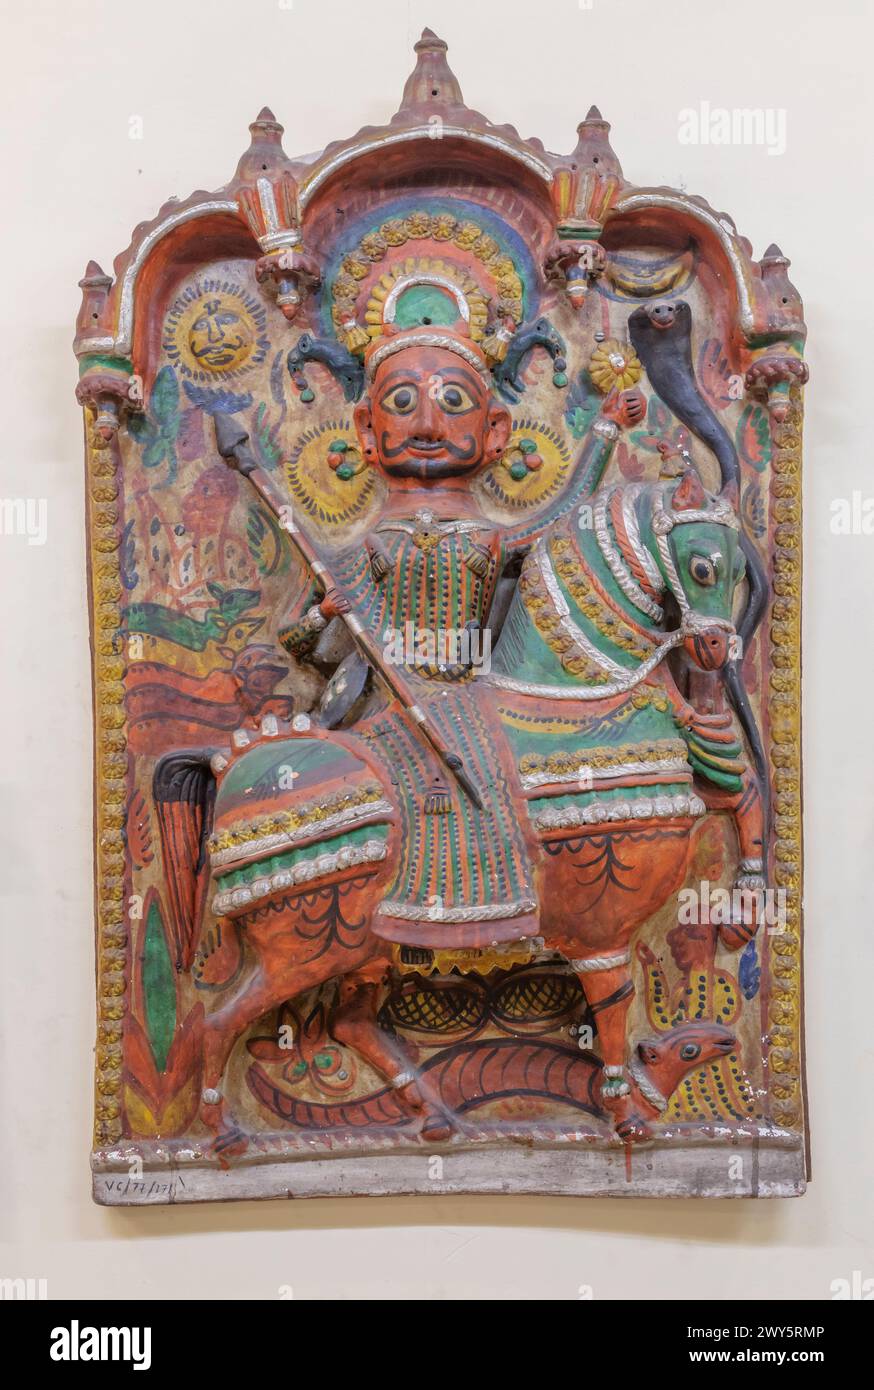 Figurine en terre cuite, Musée national de l'artisanat, New Delhi, Inde Banque D'Images